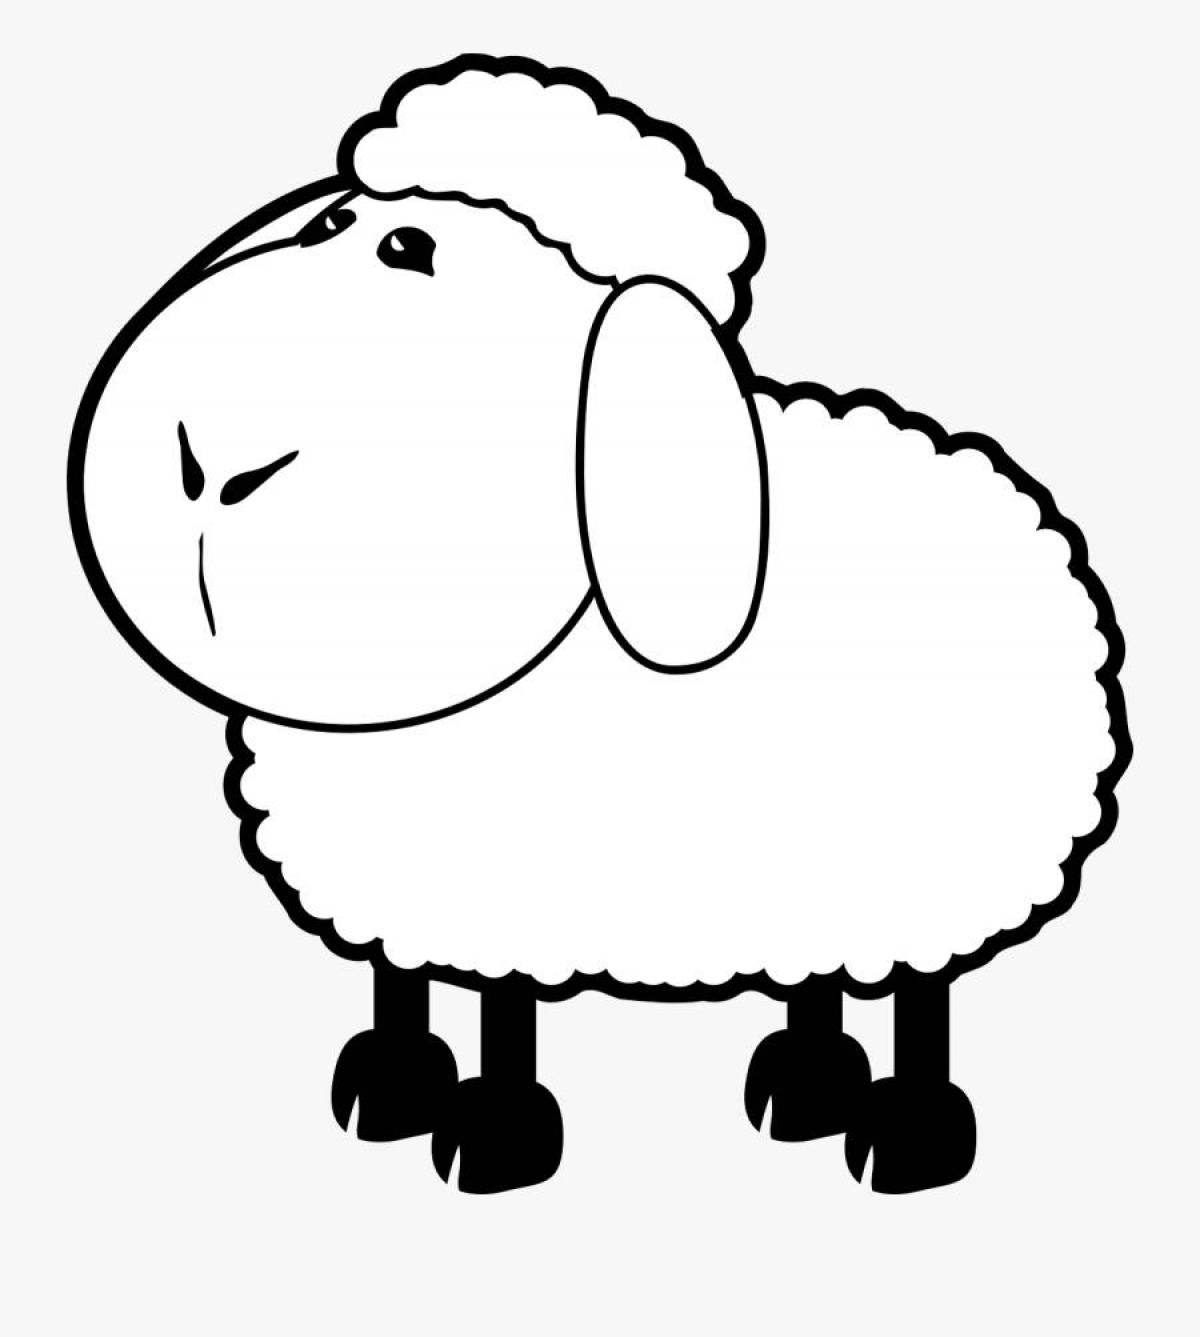 Увлекательная раскраска овец для детей